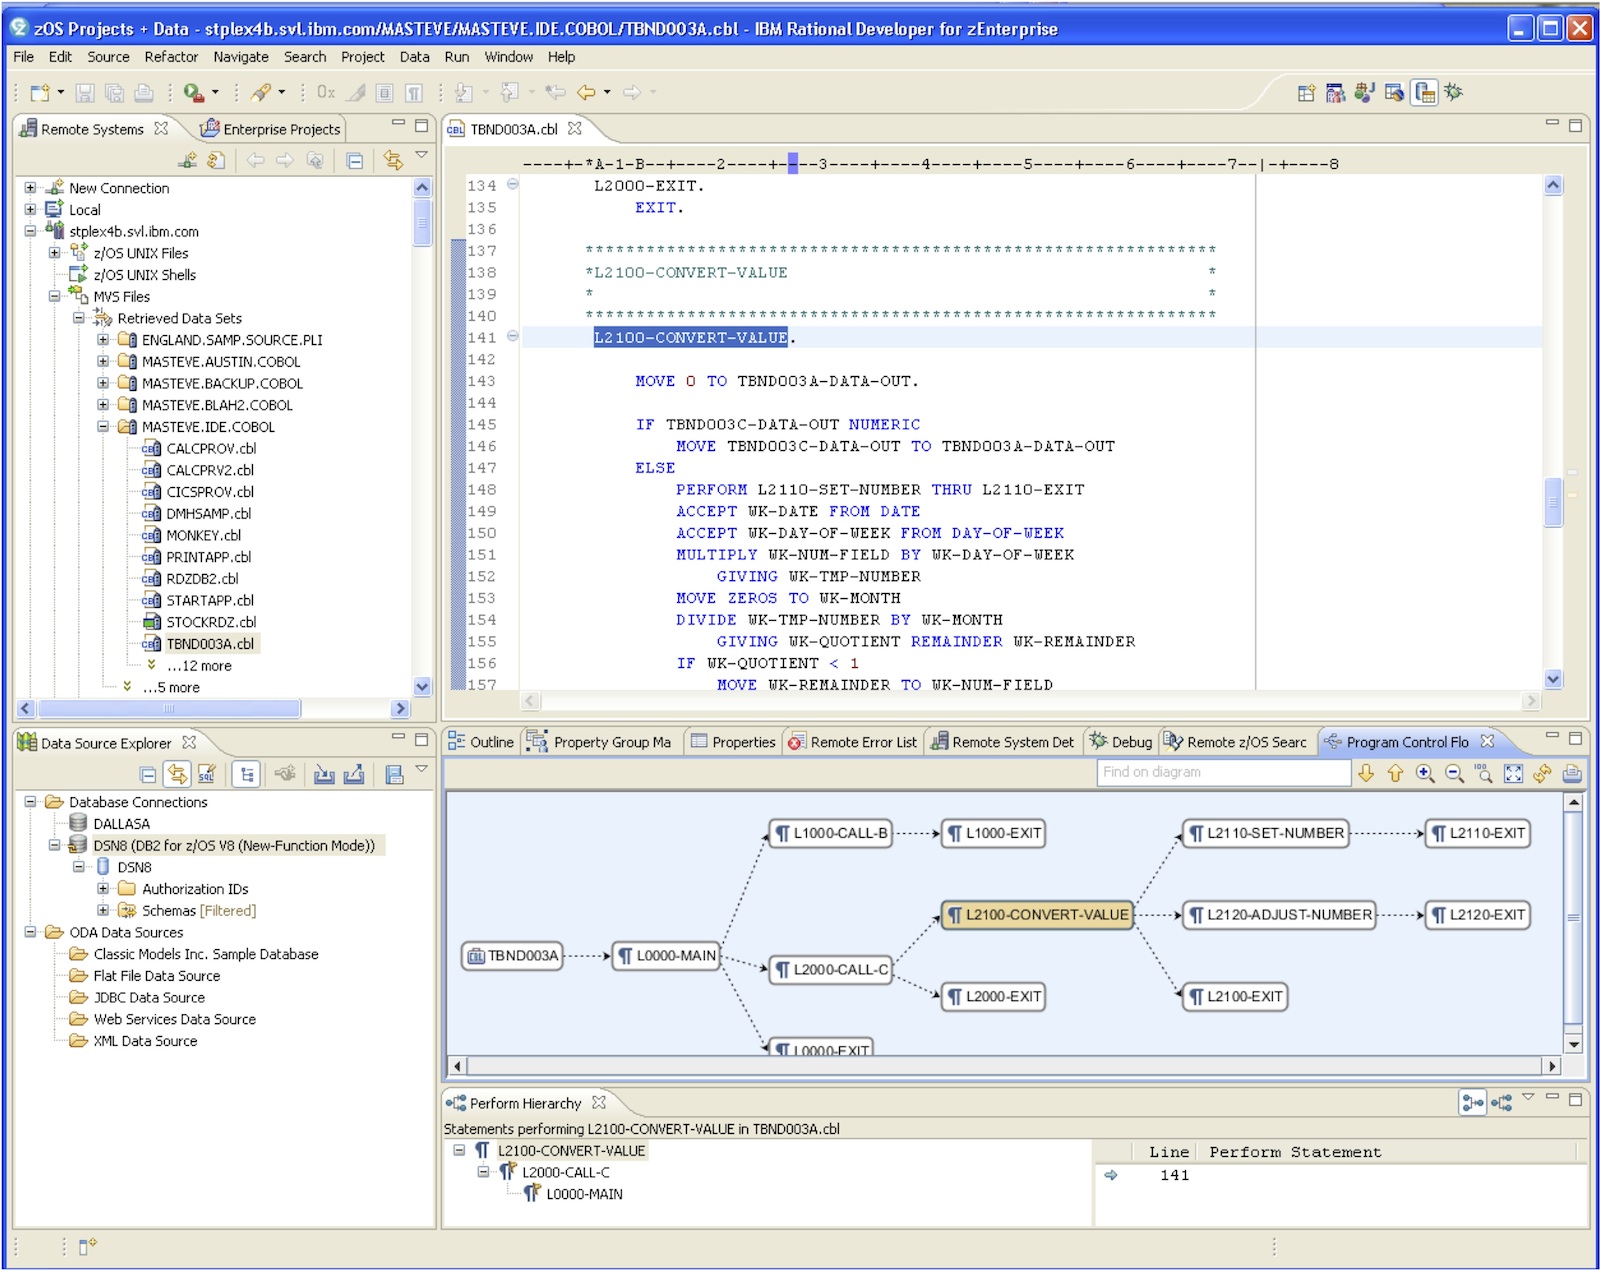 Image of the Rational Developer for System z IDE UI